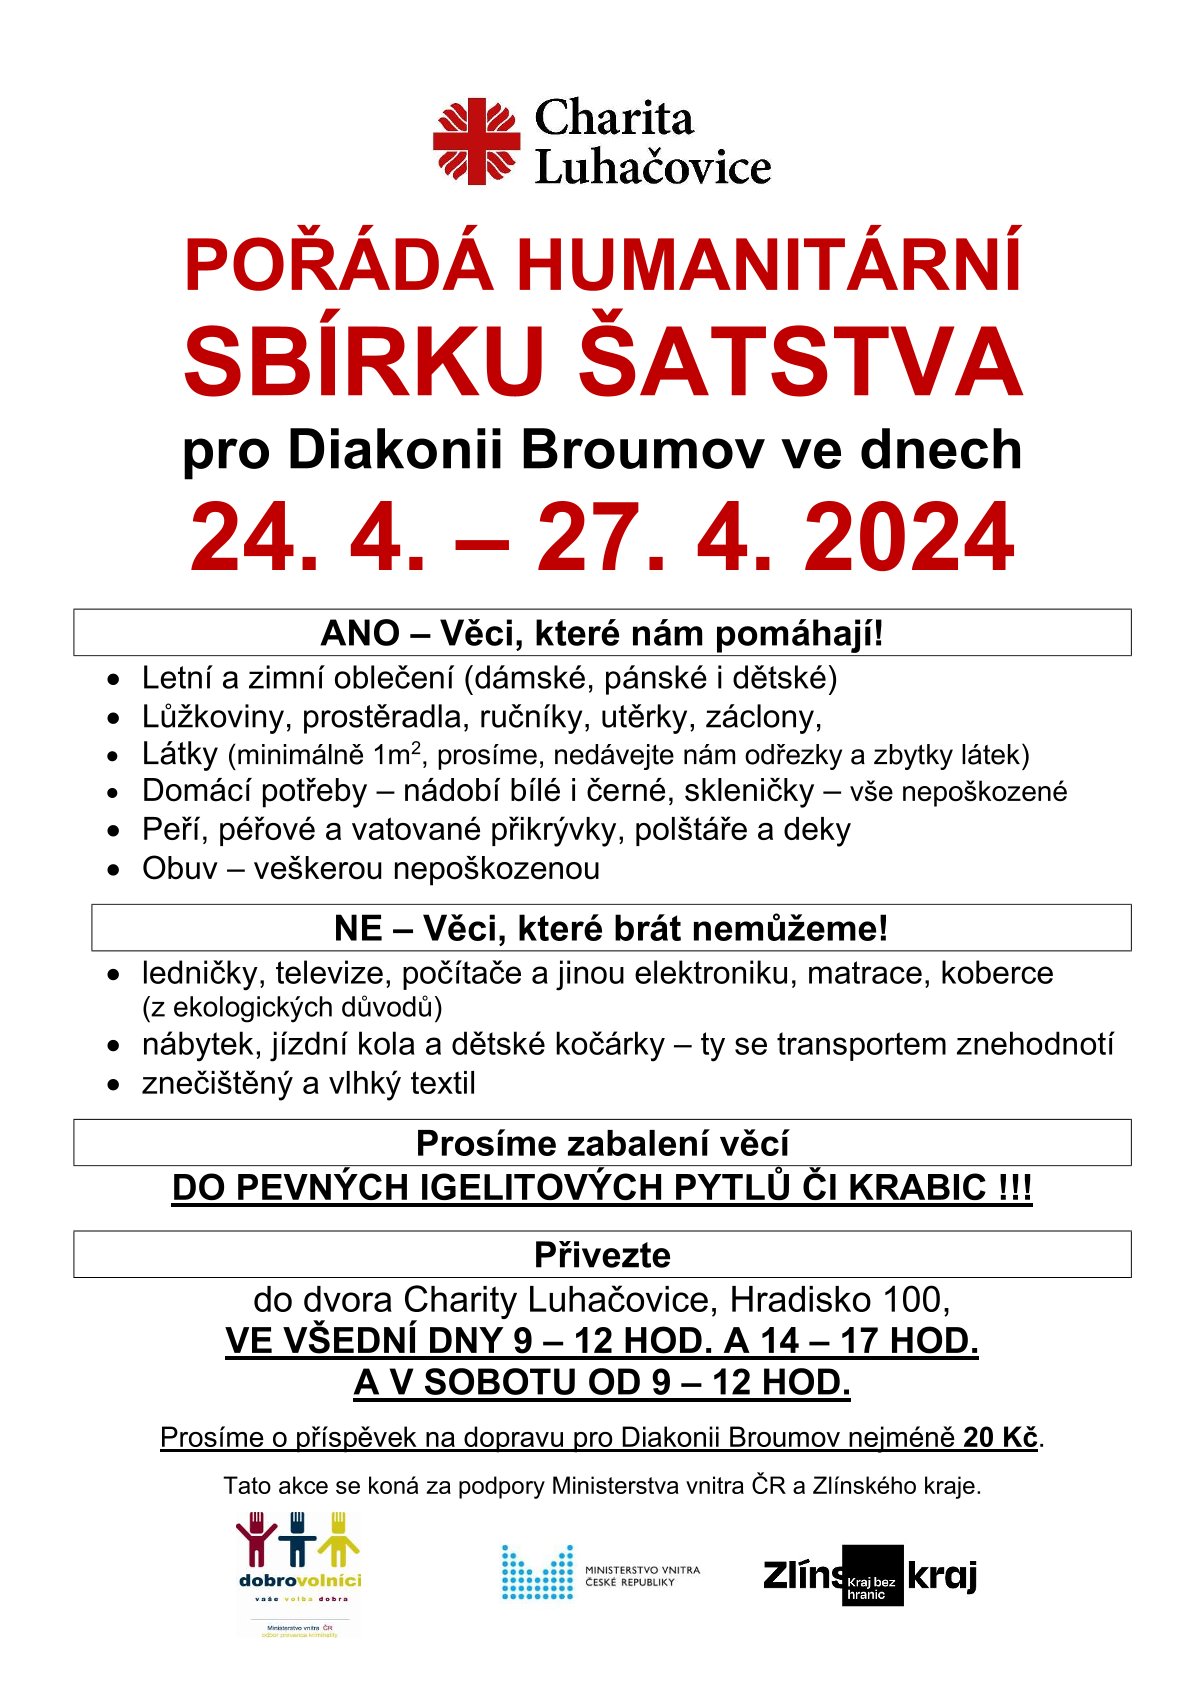 Charita Luhačovice pořádá humanitární sbírku šatstva pro Diakonii Broumov ve dnech 24. 4. – 27. 4. 2024